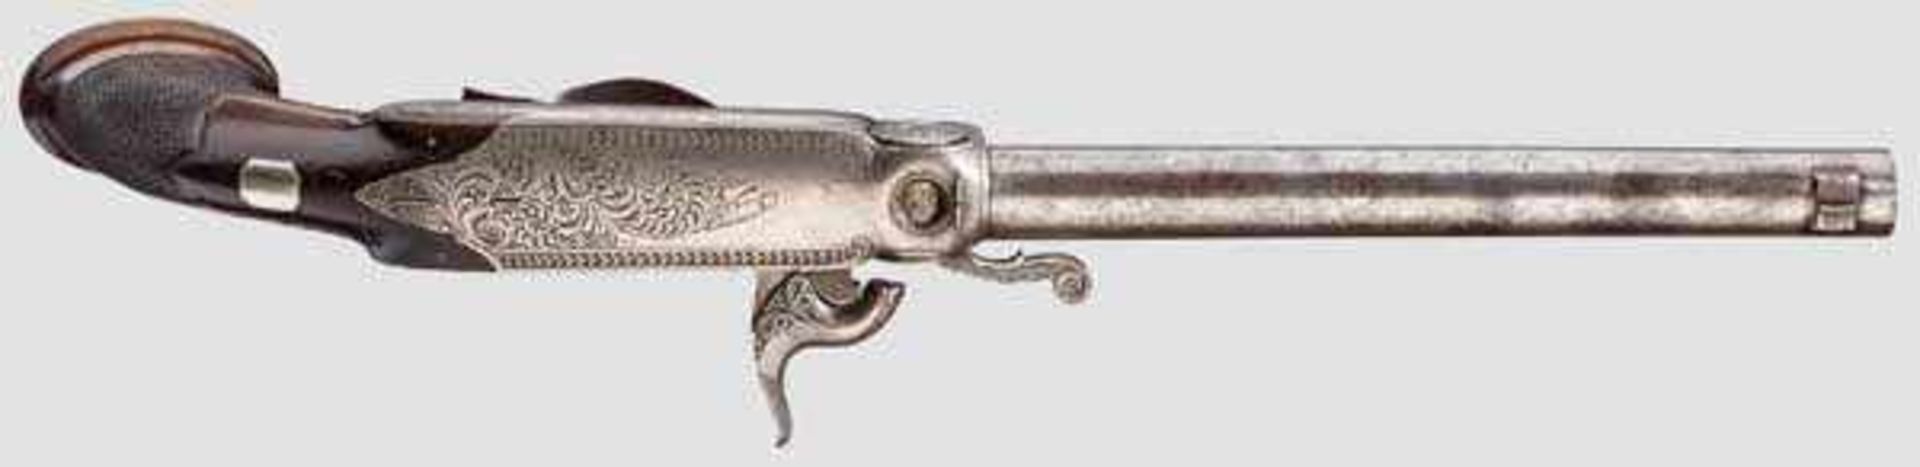 Hinterlader-Perkussionspistole, Tanner, Hannover um 1850/60 Runder und glatter Lauf im Kaliber 7 - Bild 3 aus 3